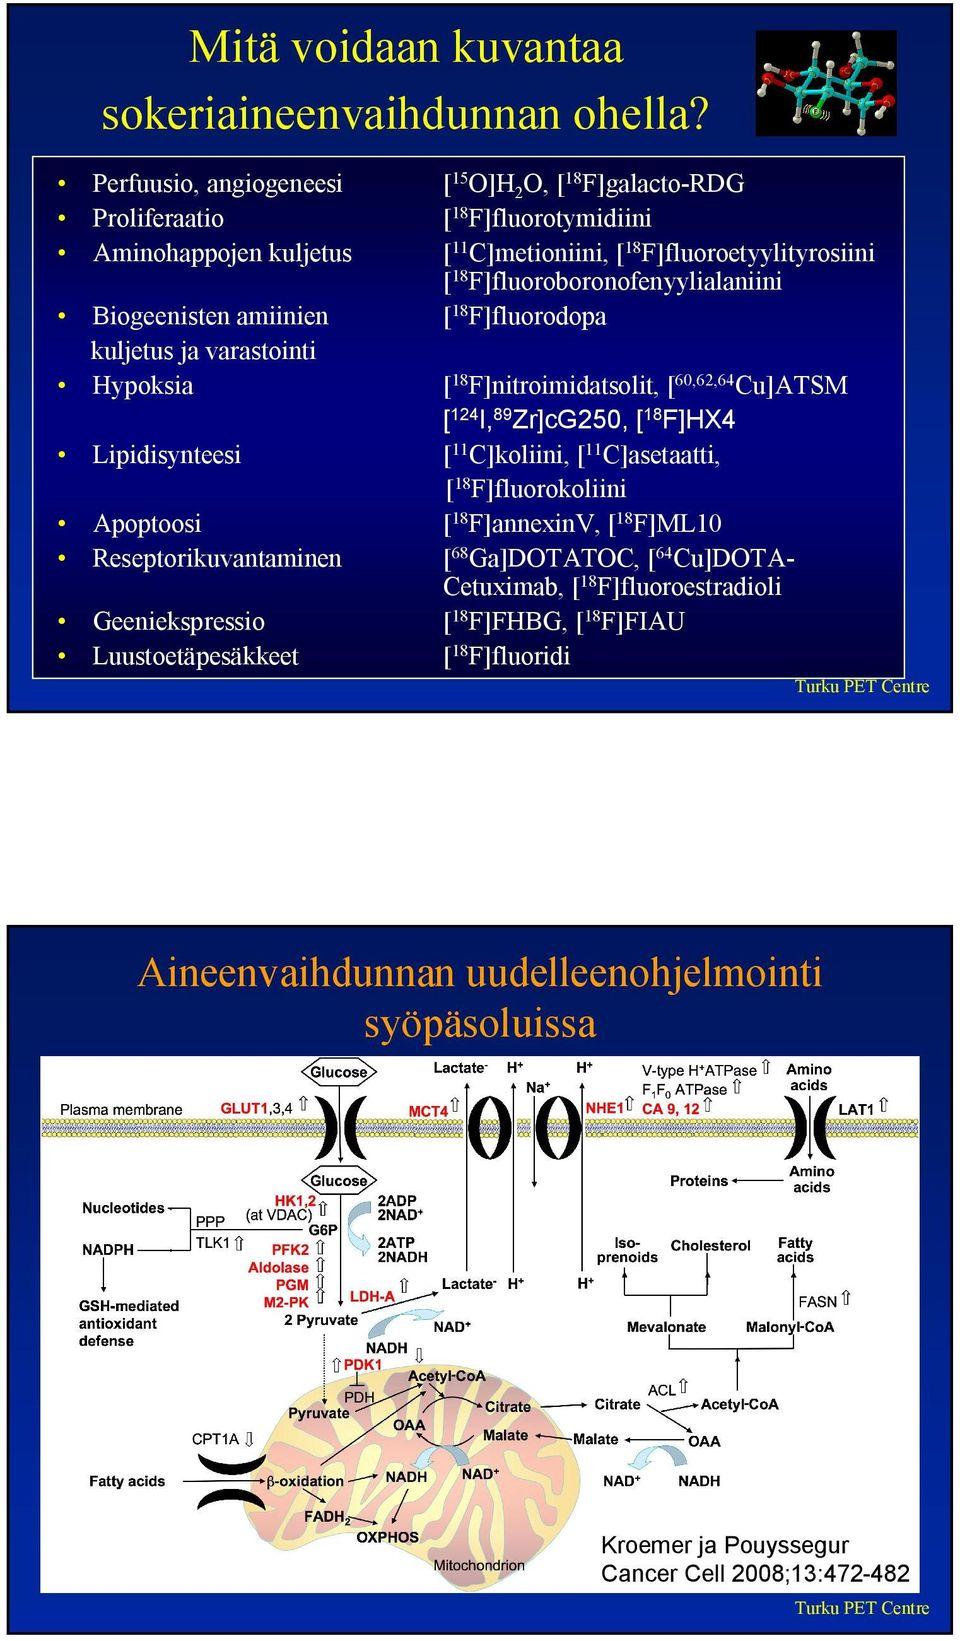 F]fluoroboronofenyylialaniini Biogeenisten amiinien [ 18 F]fluorodopa kuljetus ja varastointi Hypoksia [ 18 F]nitroimidatsolit, [ 60,62,64 Cu]ATSM [ 124 I, 89 Zr]cG250, [ 18 F]HX4 Lipidisynteesi